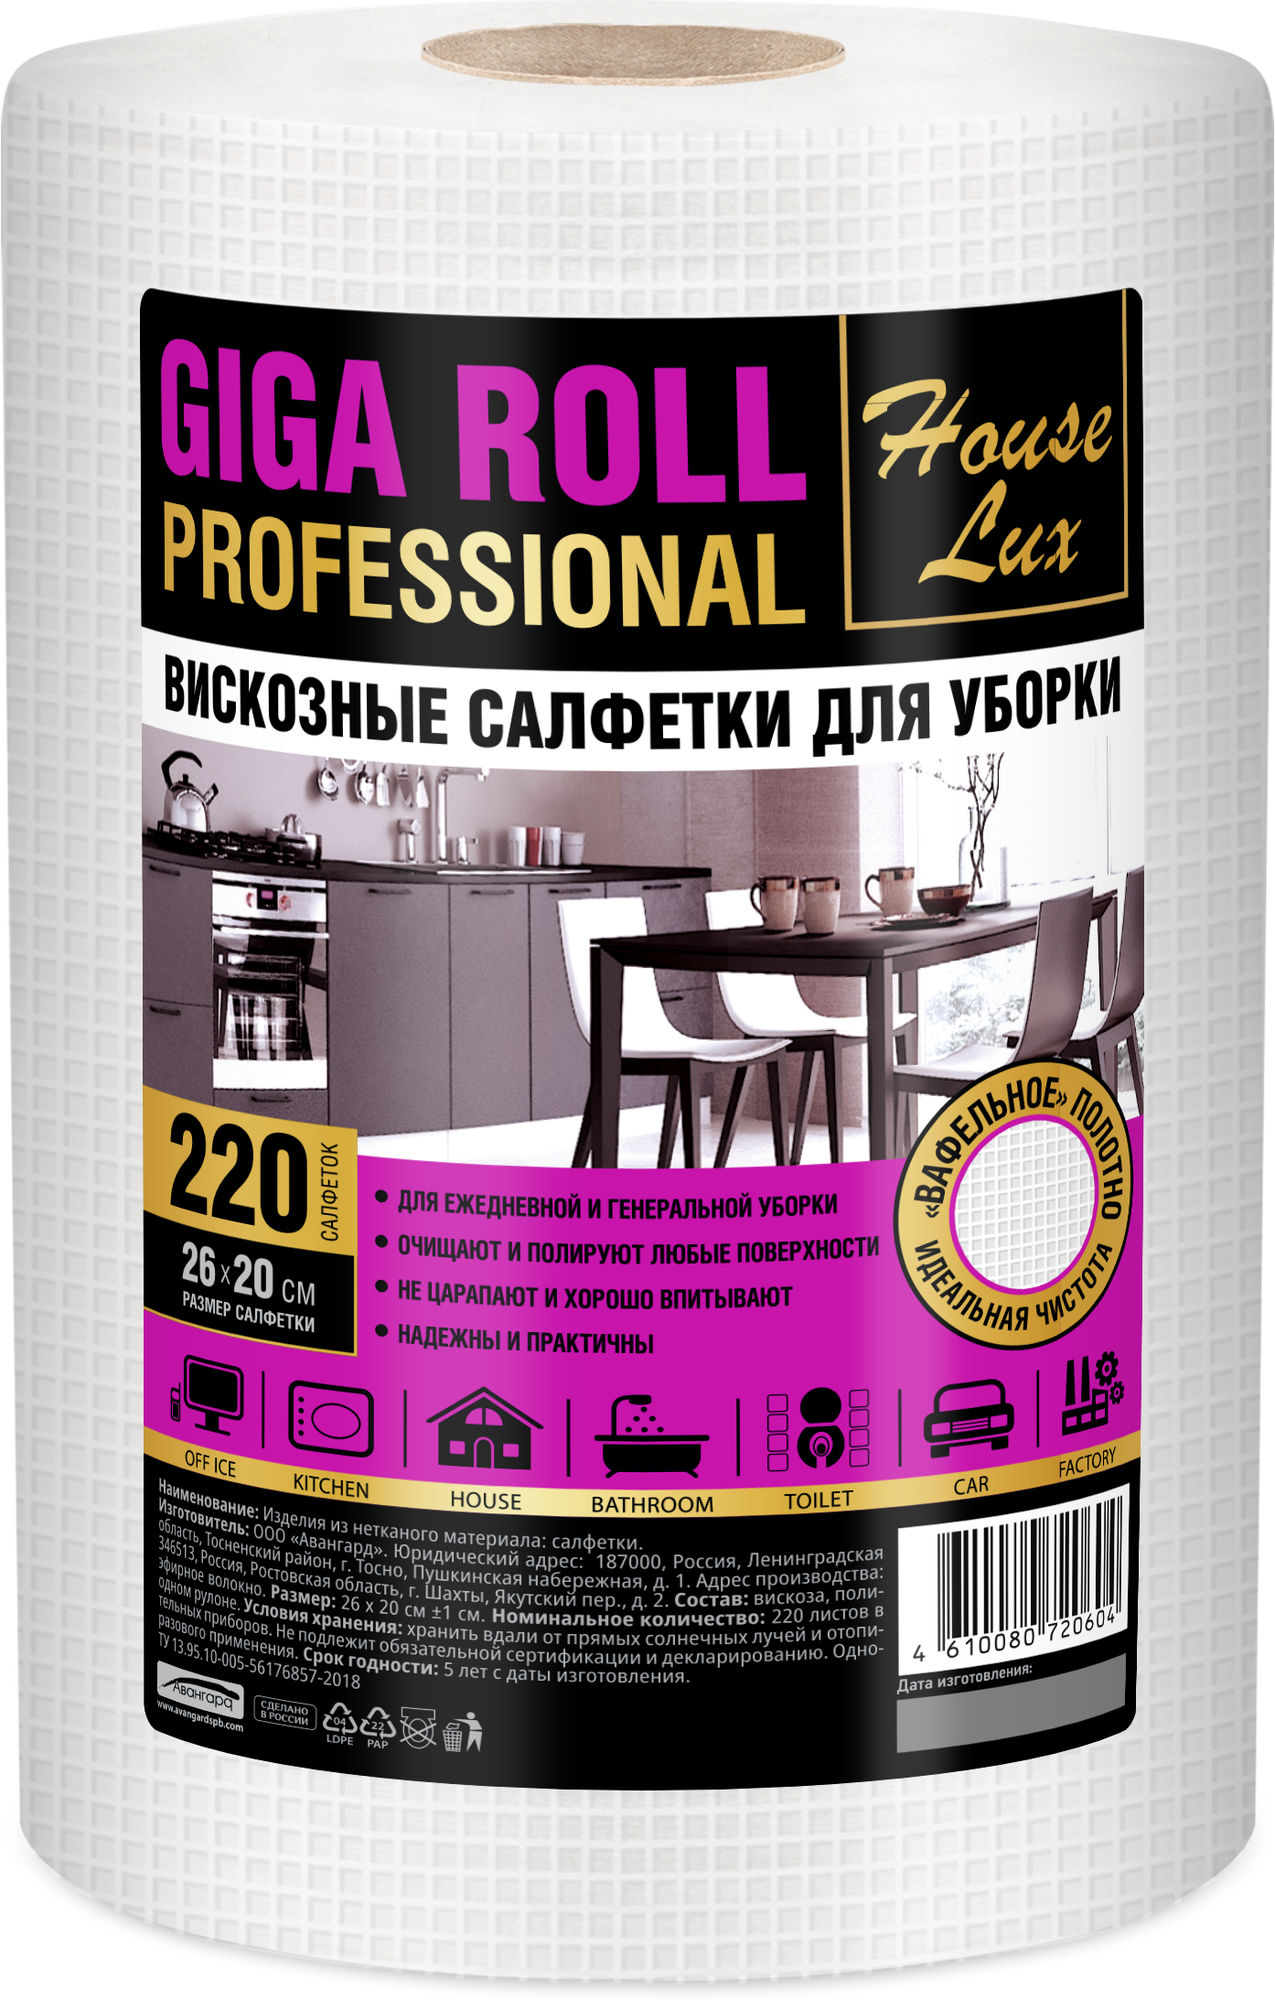 Салфетки House Lux Giga Roll Profeesional